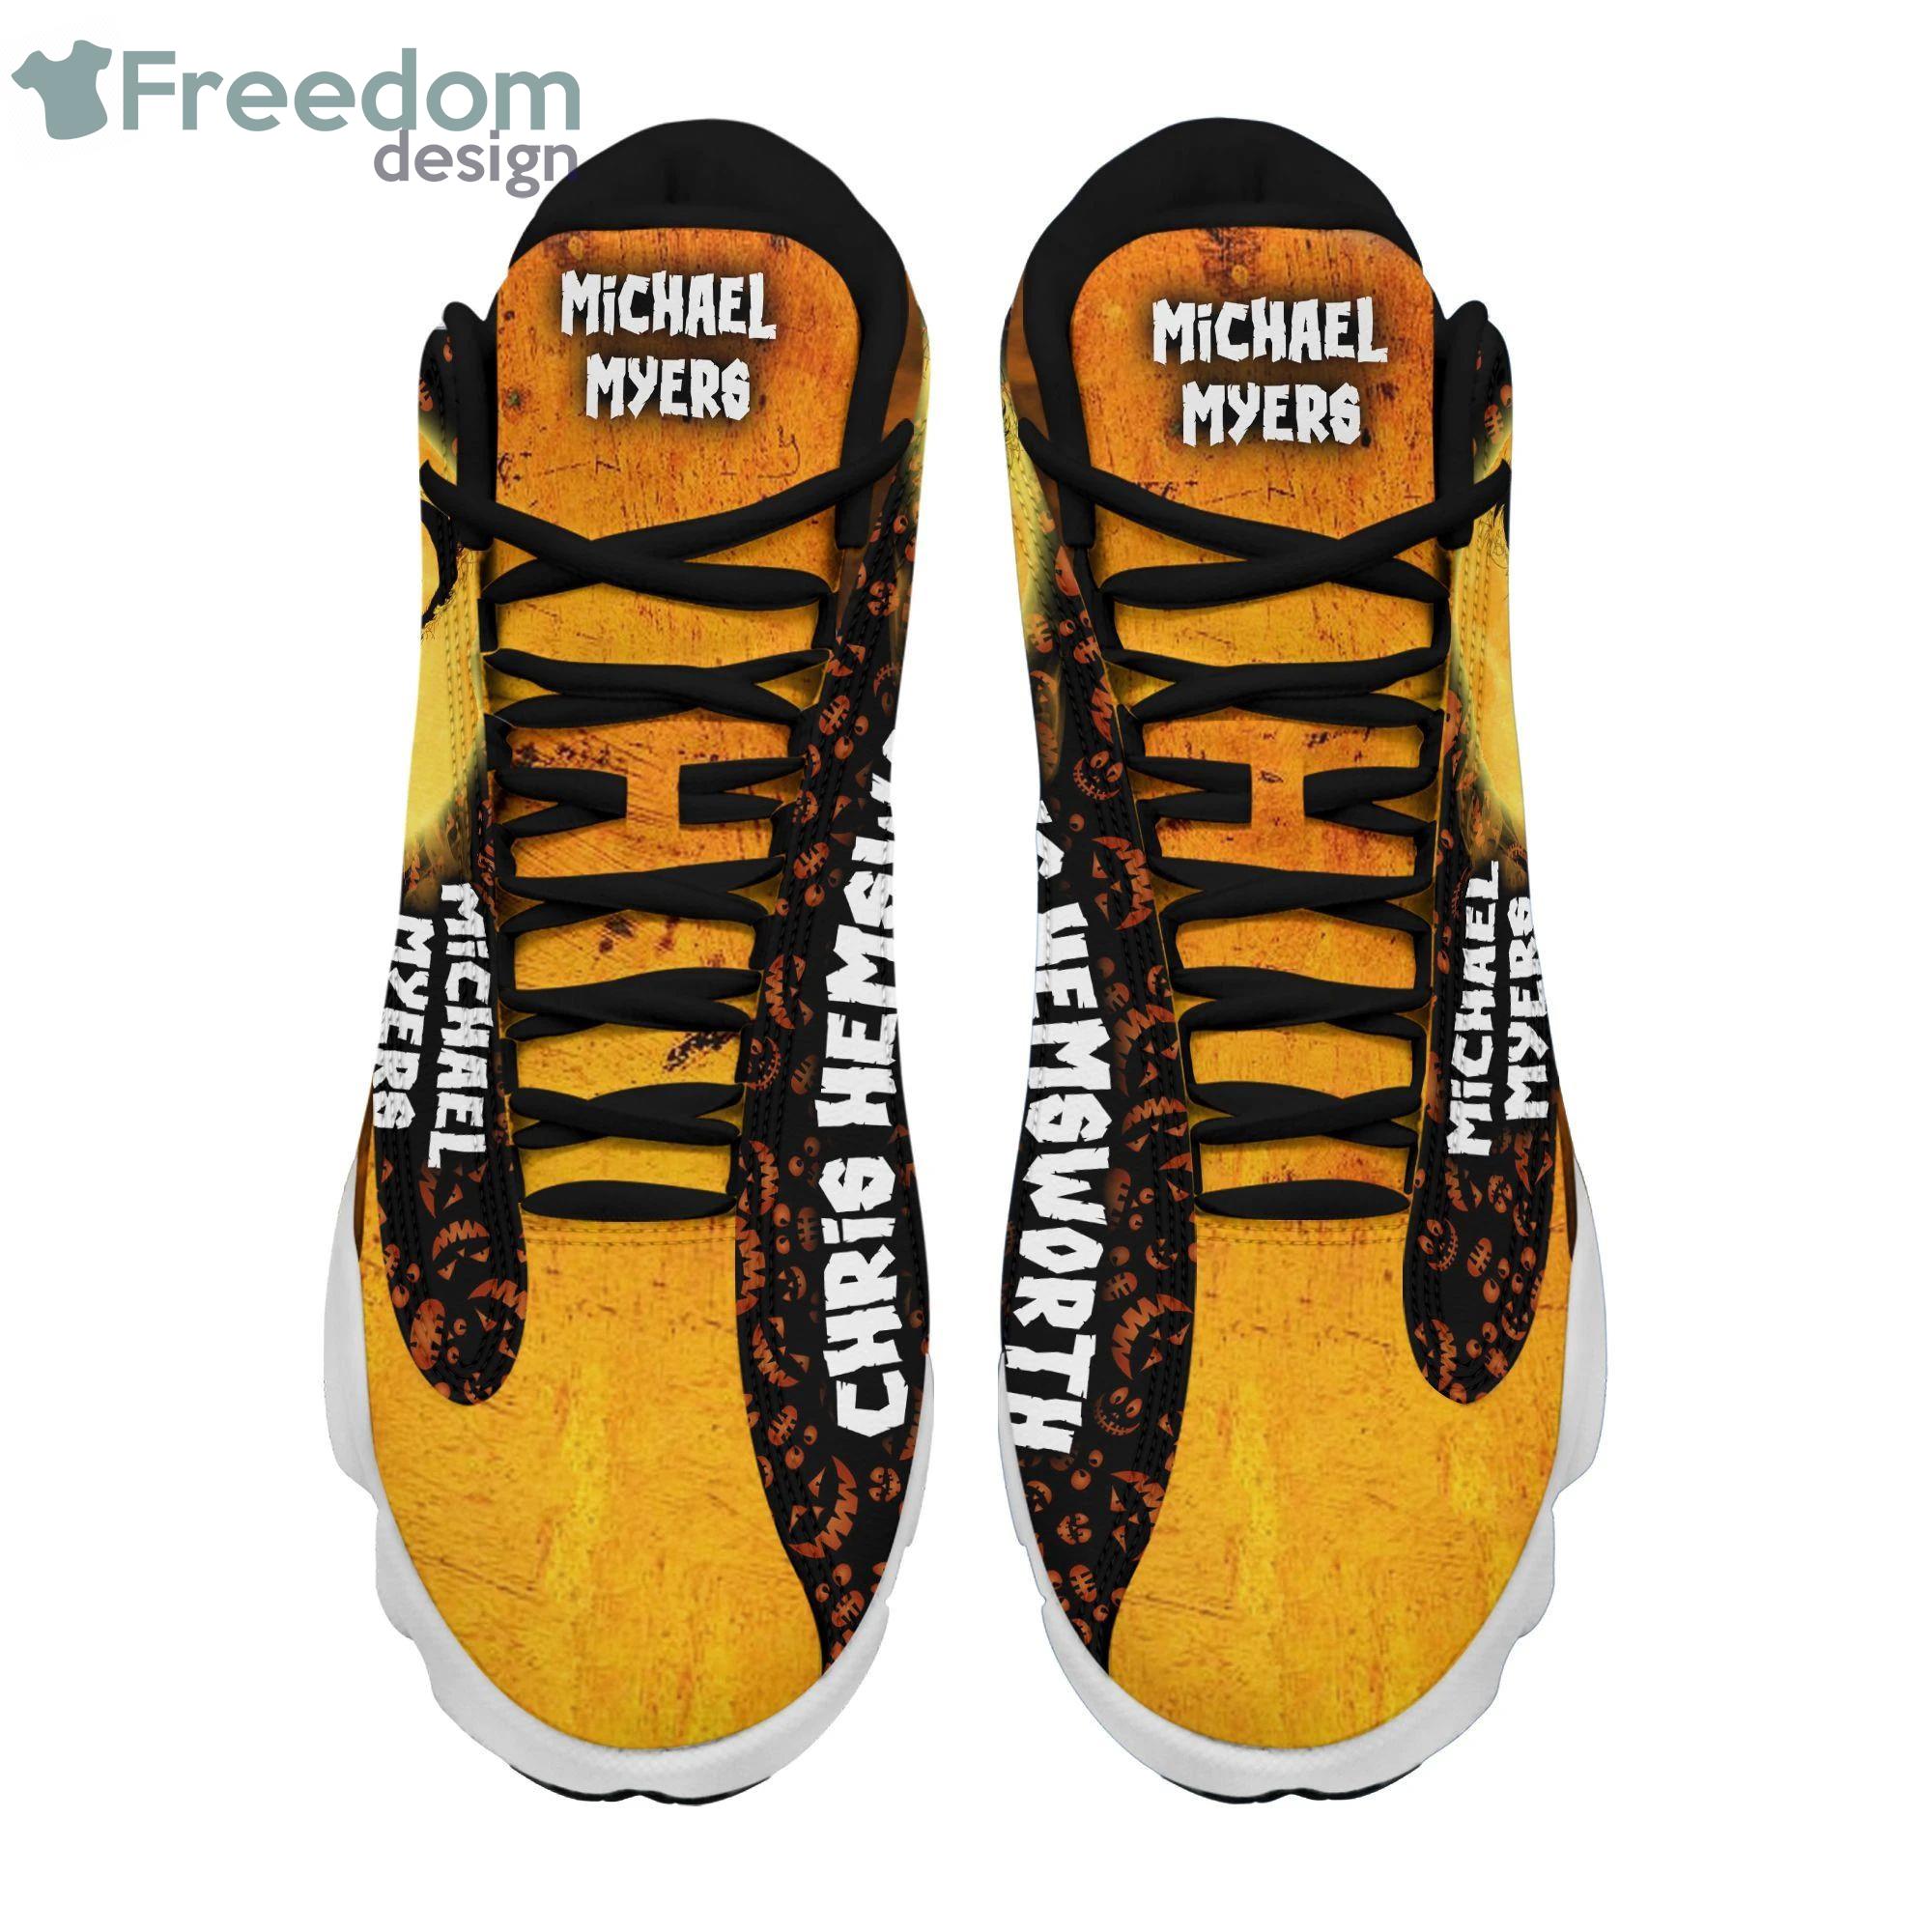 Personalized Jason Voorhees Halloween Air Jordan 13 Shoes